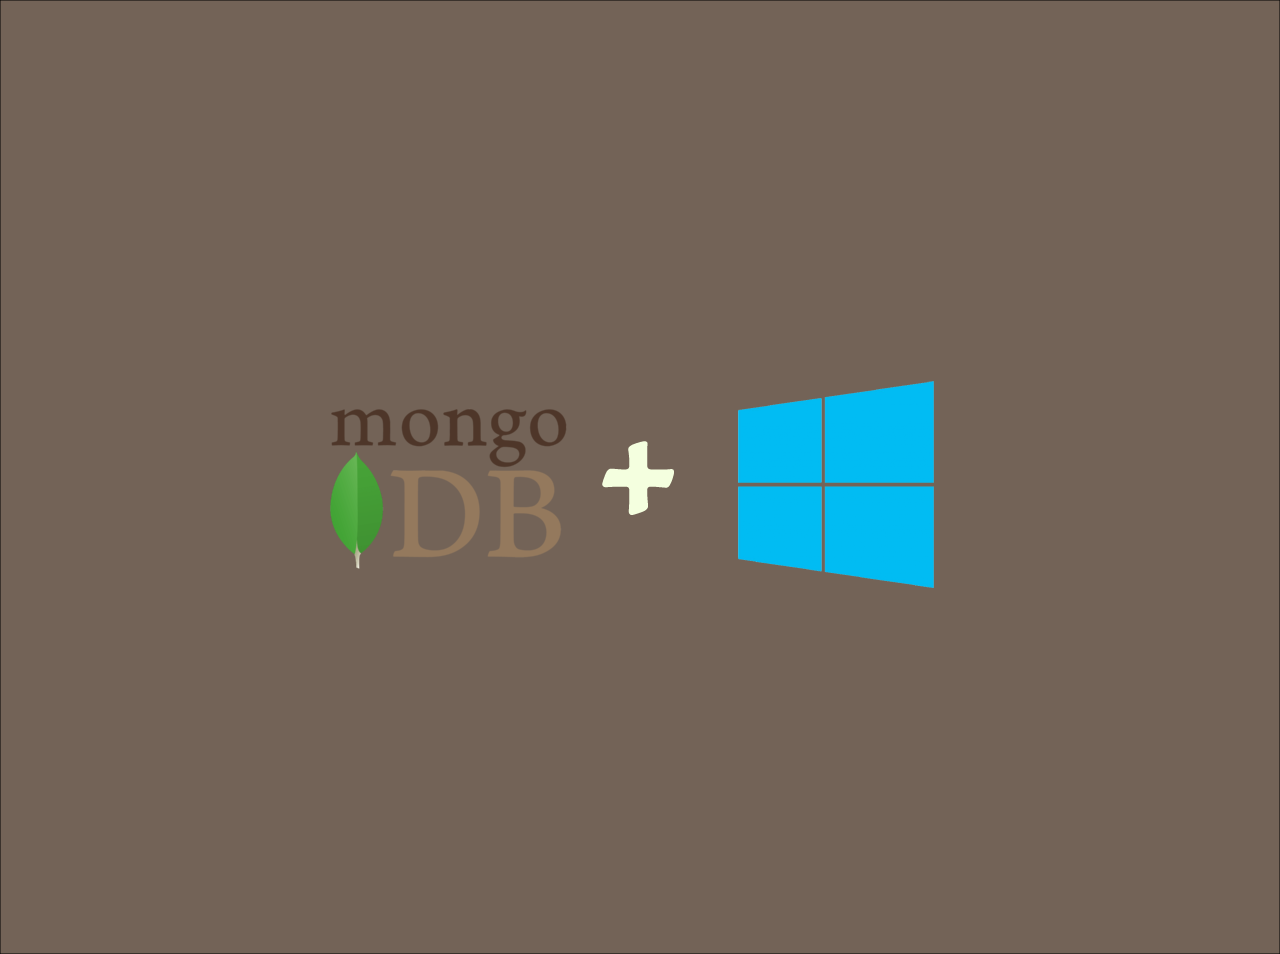 How to install and setup MongoDB on Windows